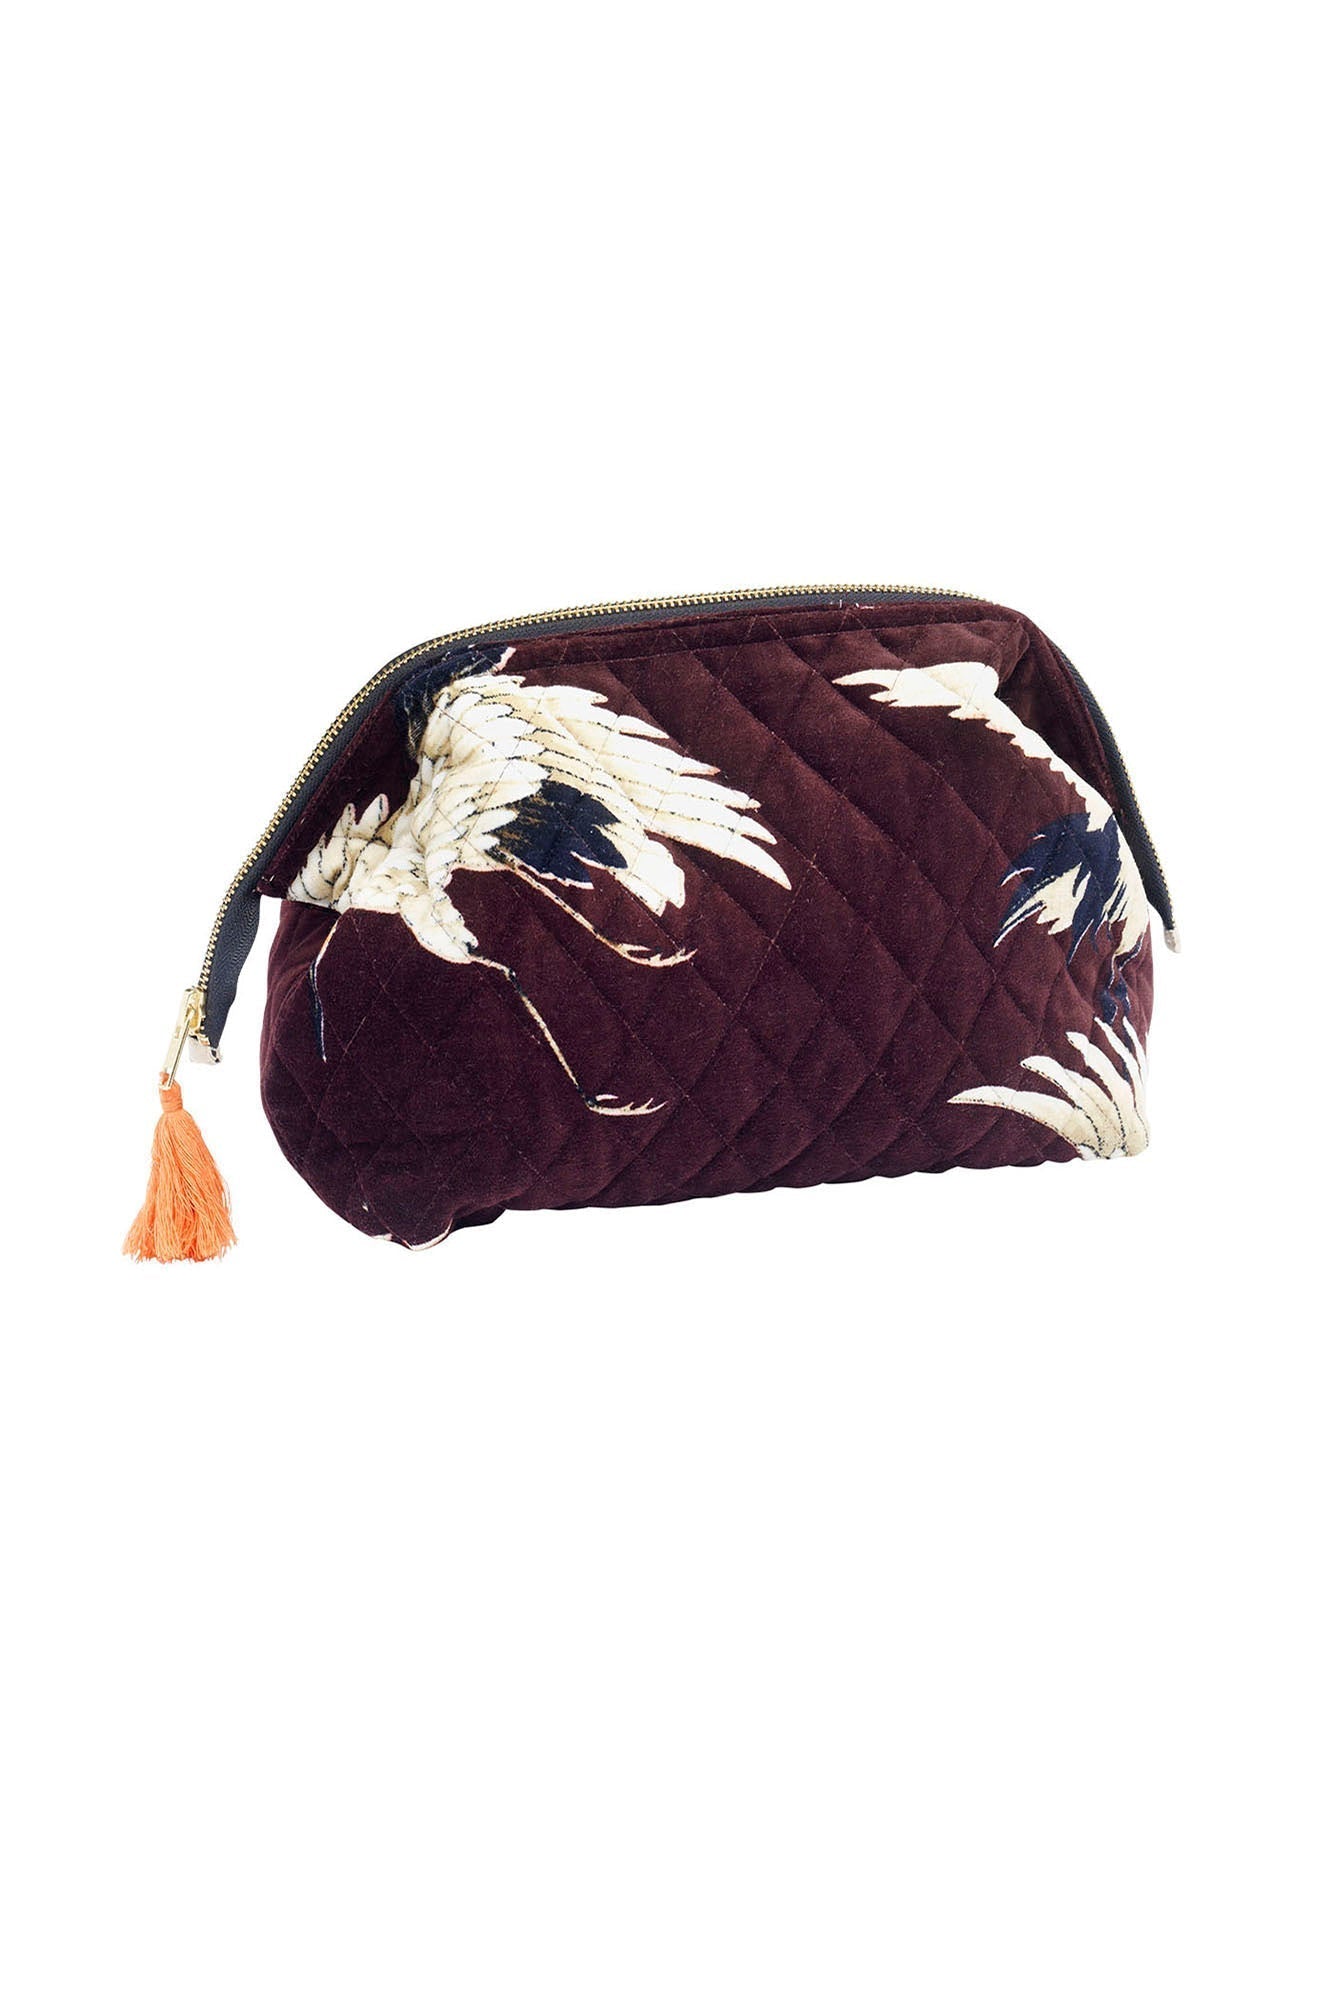 Burgundy Velvet Stork Pouch - The Nancy Smillie Shop - Art, Jewellery & Designer Gifts Glasgow